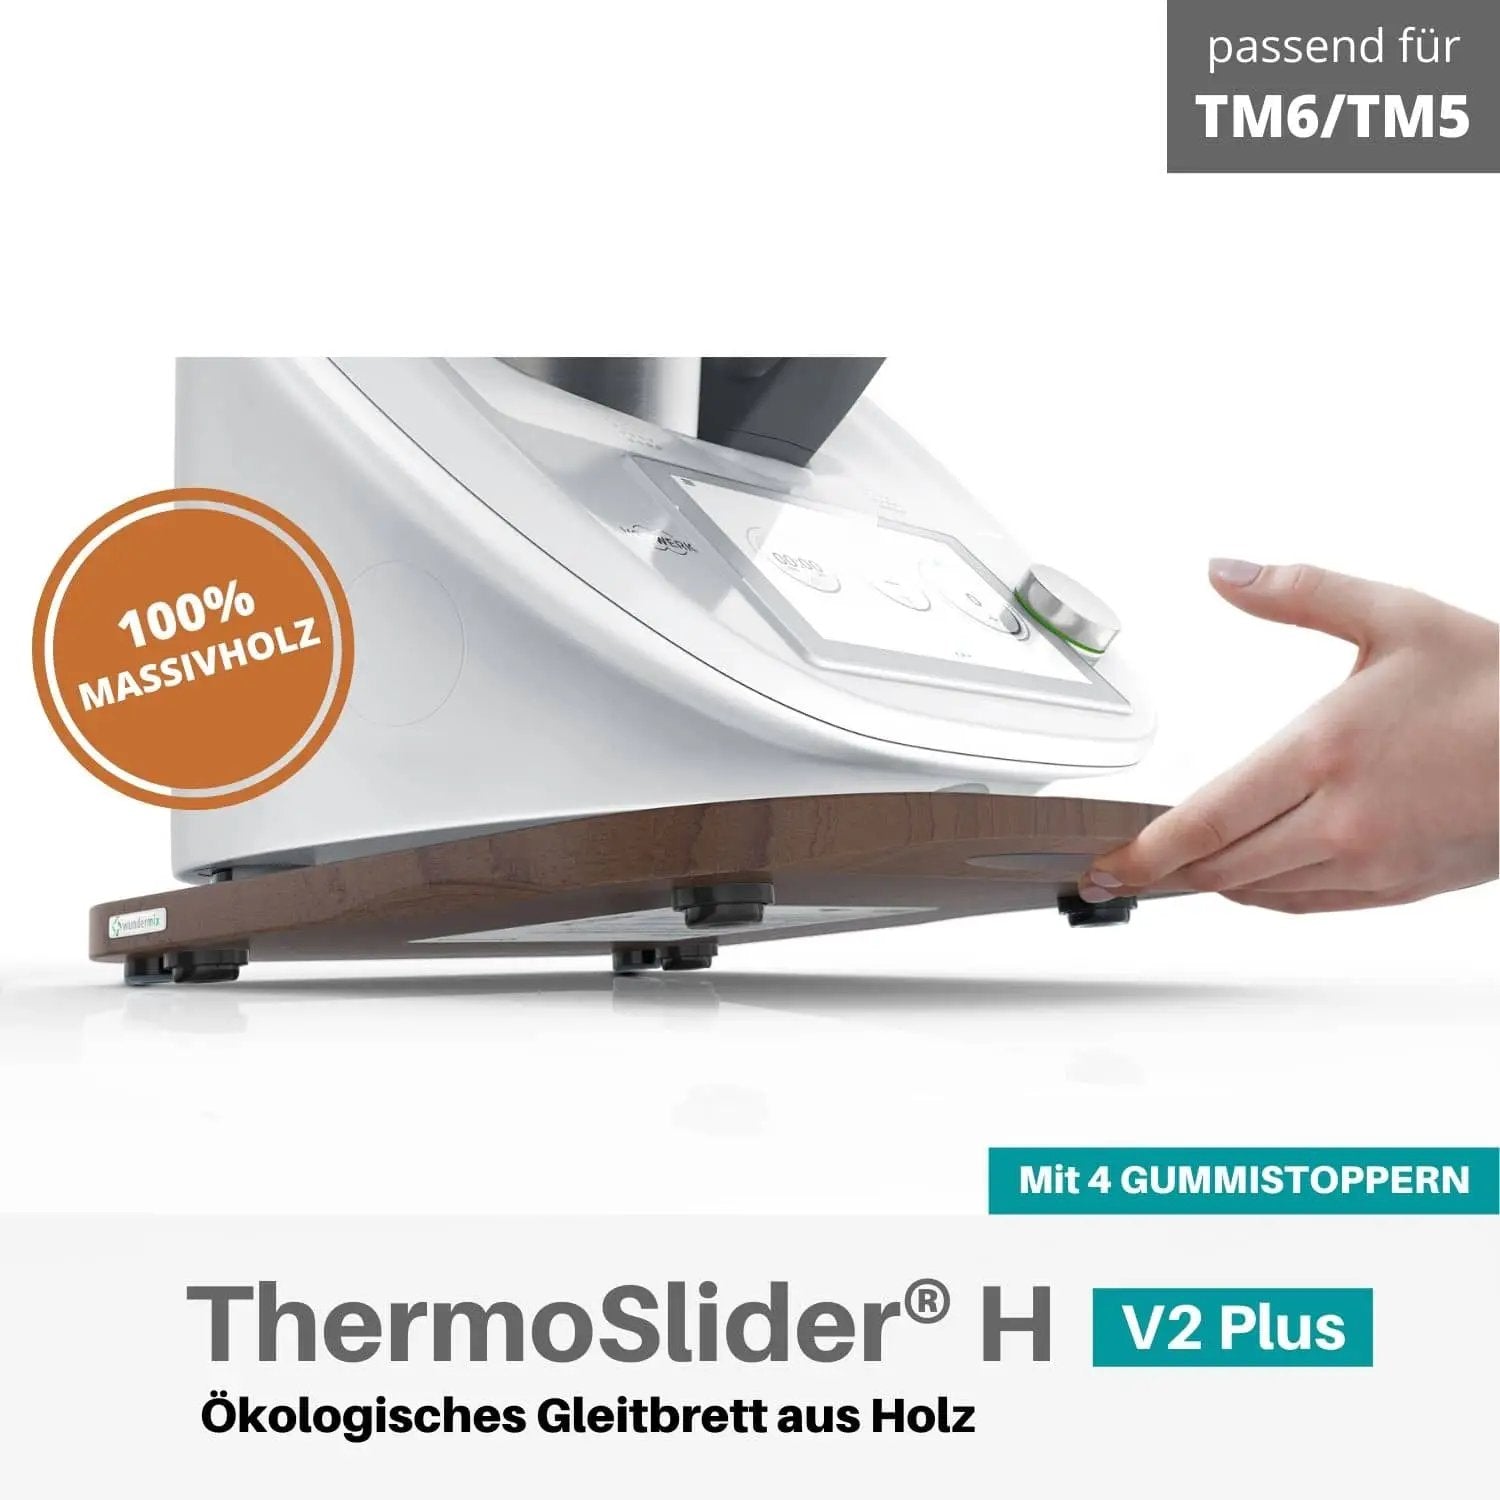 ThermoSlider® H | V2 Plus | Nussbaum | Holz-Gleitbrett für Thermomix TM6, TM5 - Wundermix GmbH